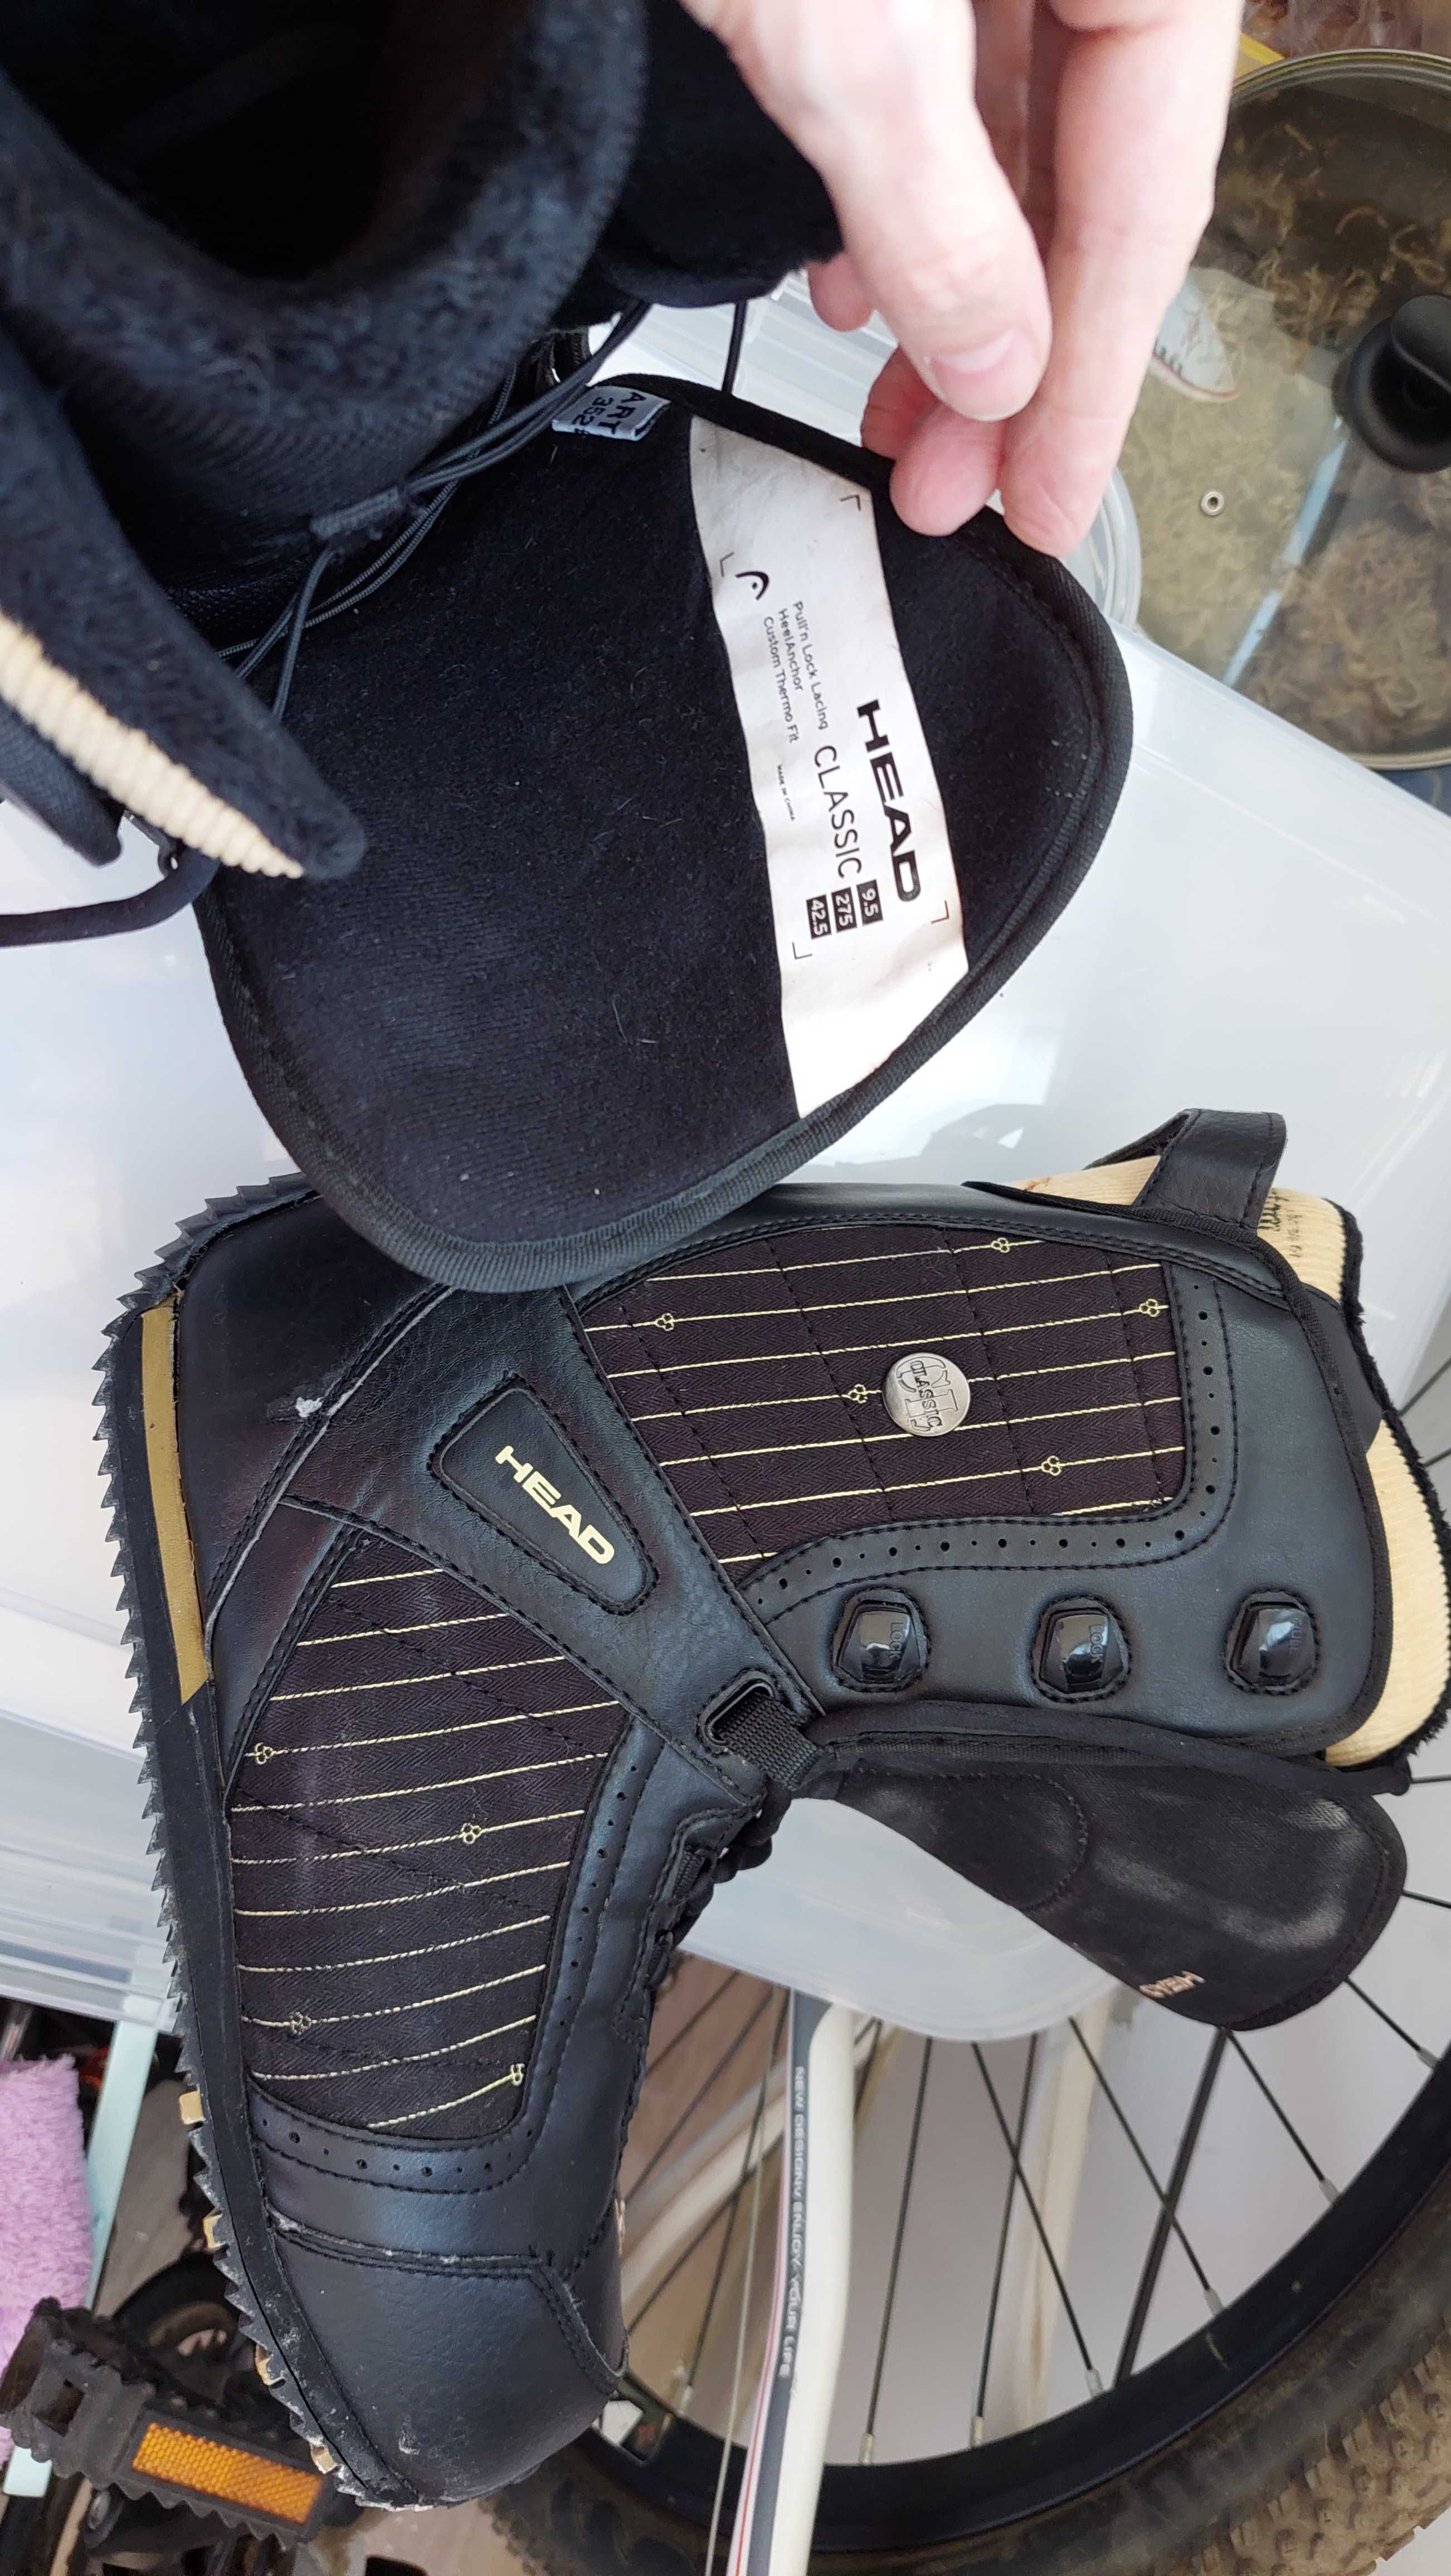 Продаю сноуборд HEAD G-Force + крепления Bone + ботинки HEAD + рюкзак